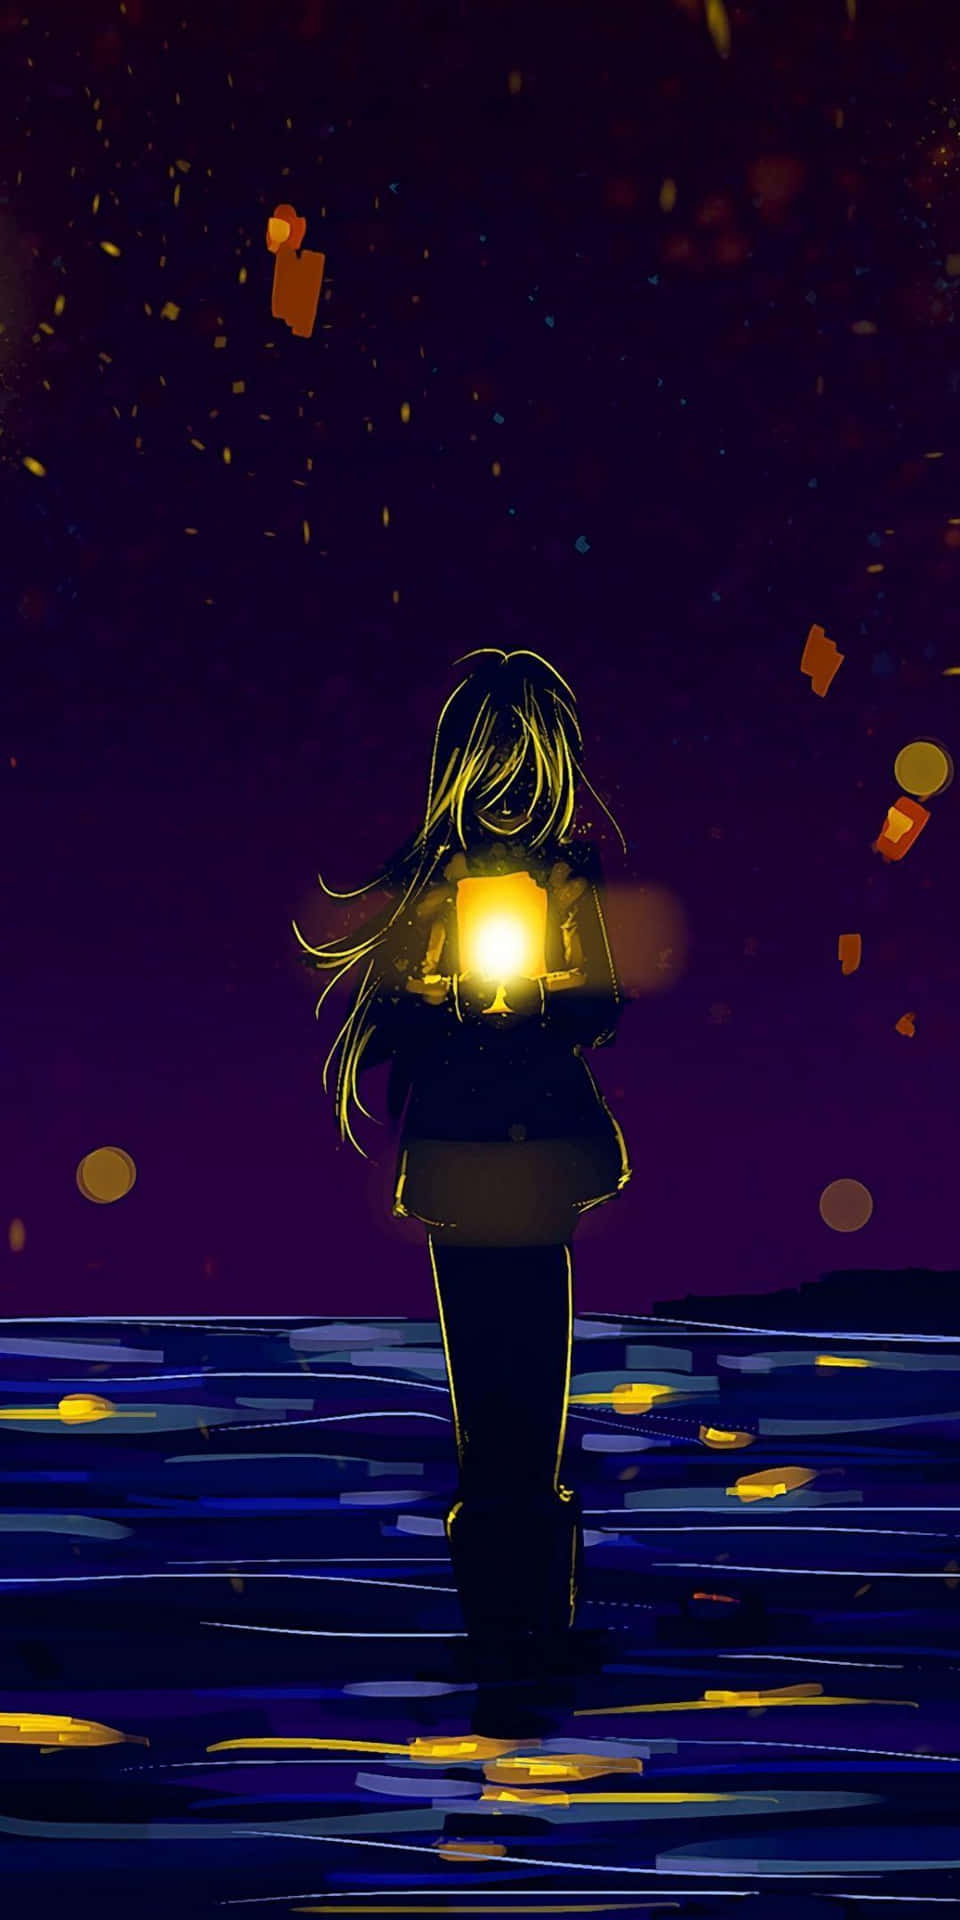 Solitary_ Light_ Journey_ Anime Wallpaper